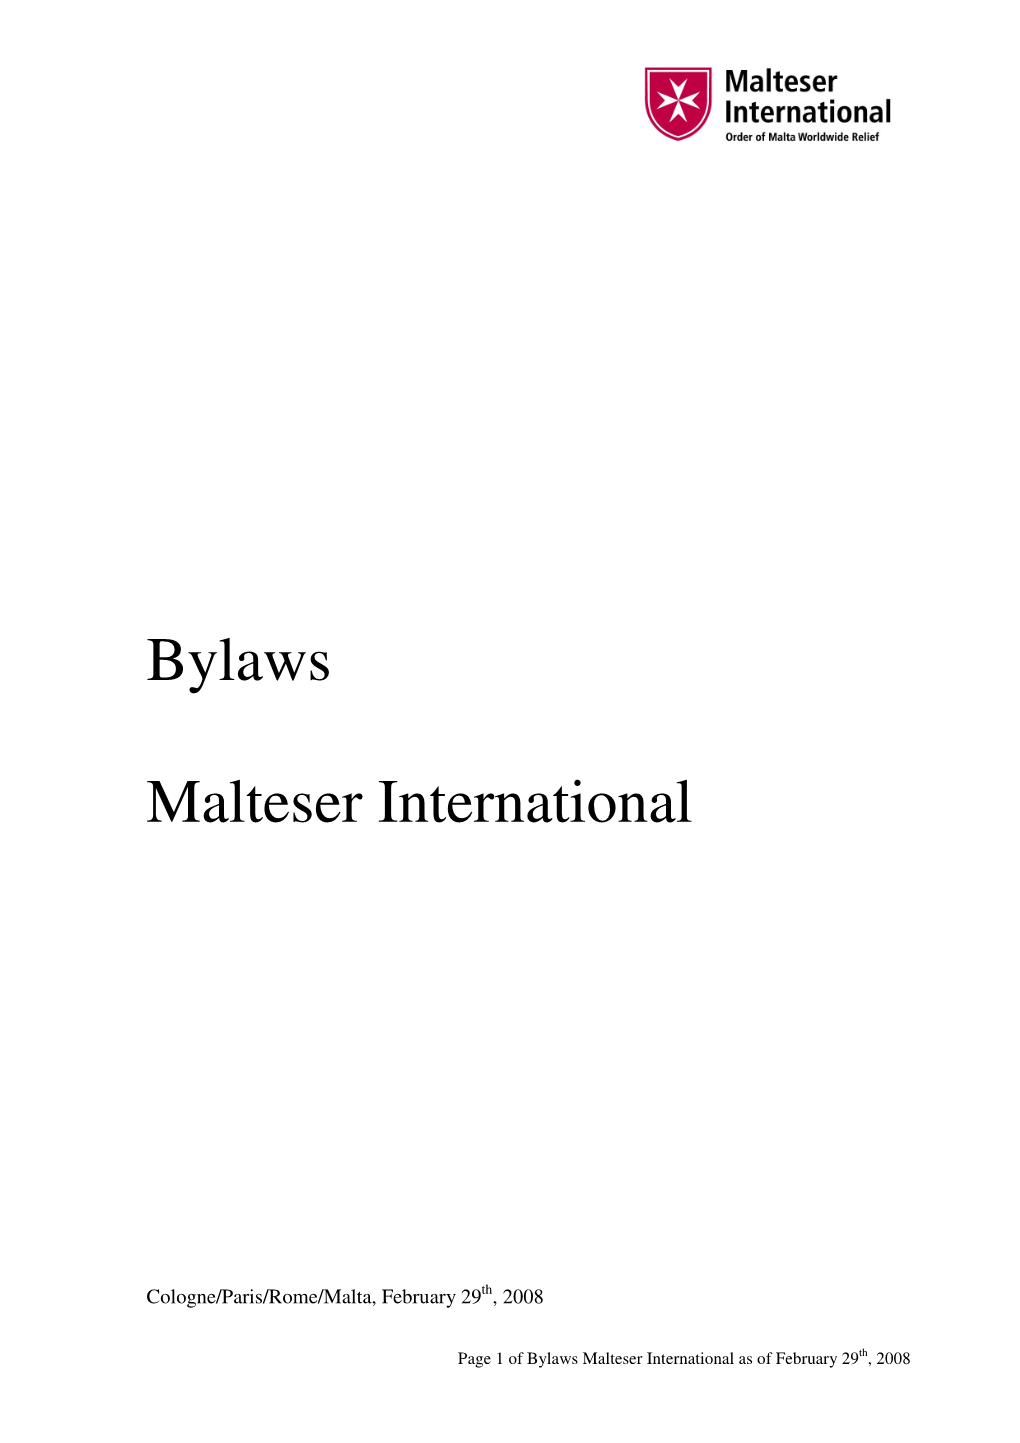 The Bylaws of Malteser International